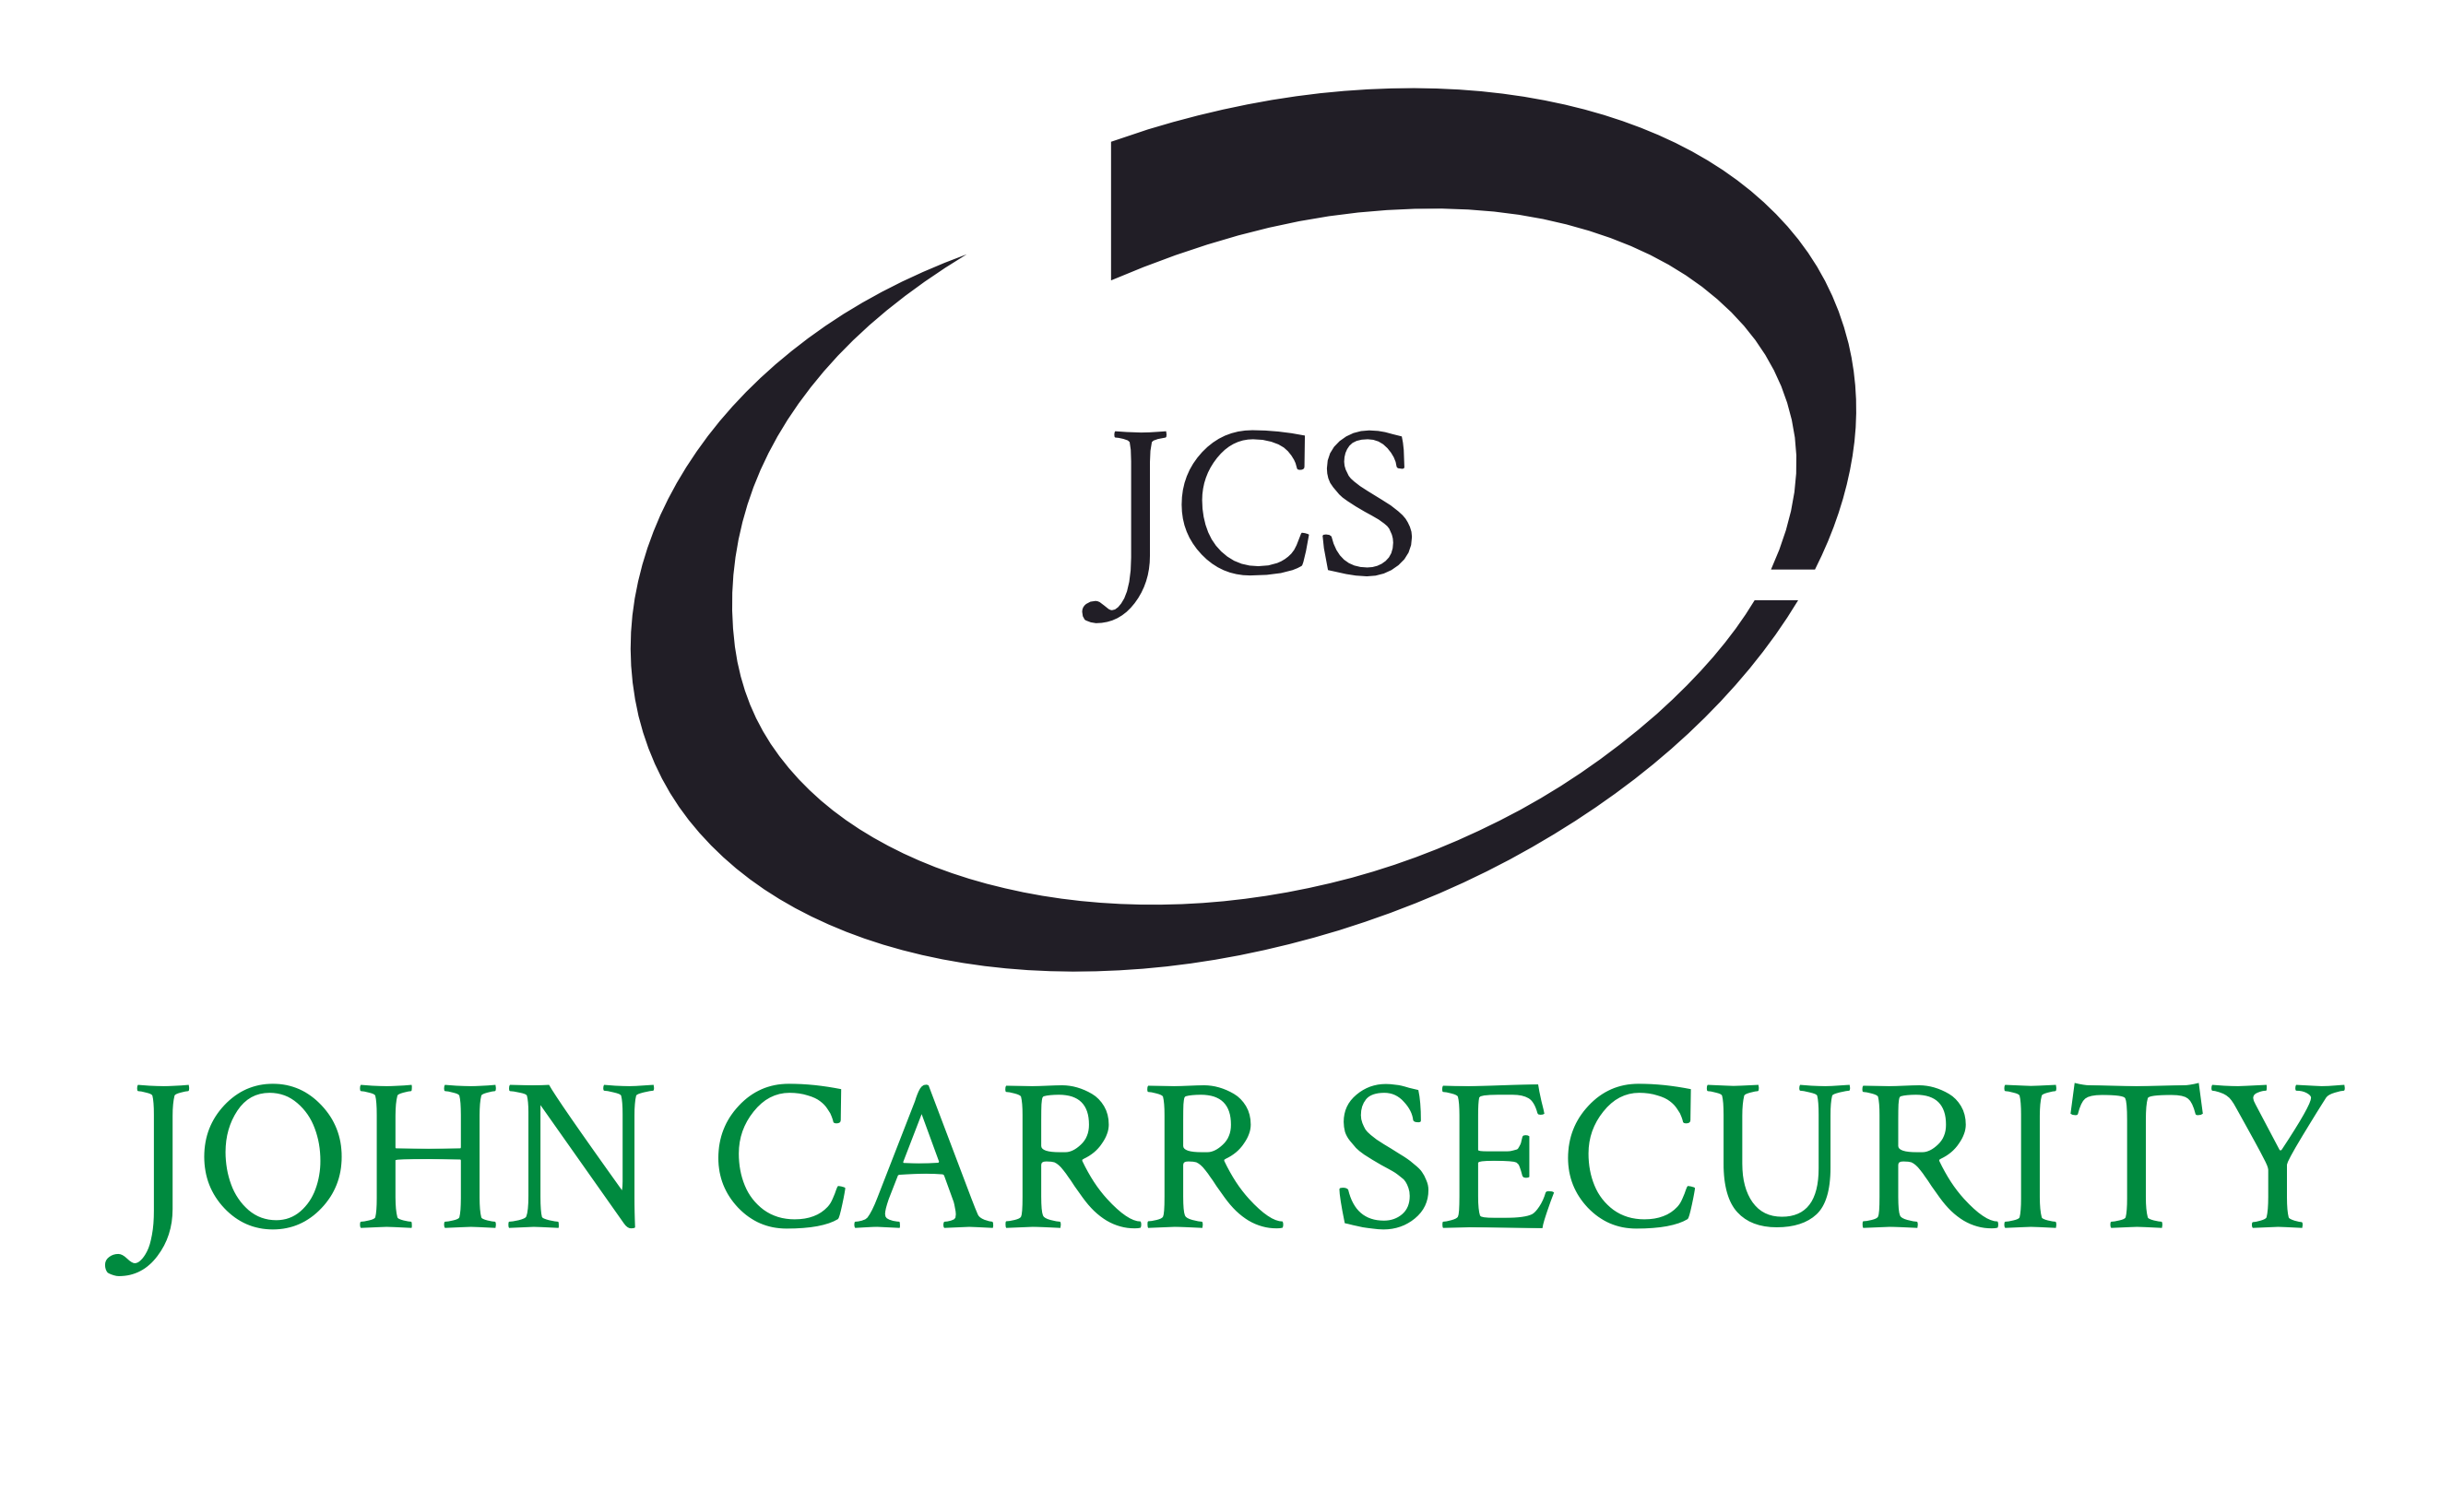 John Carr Security